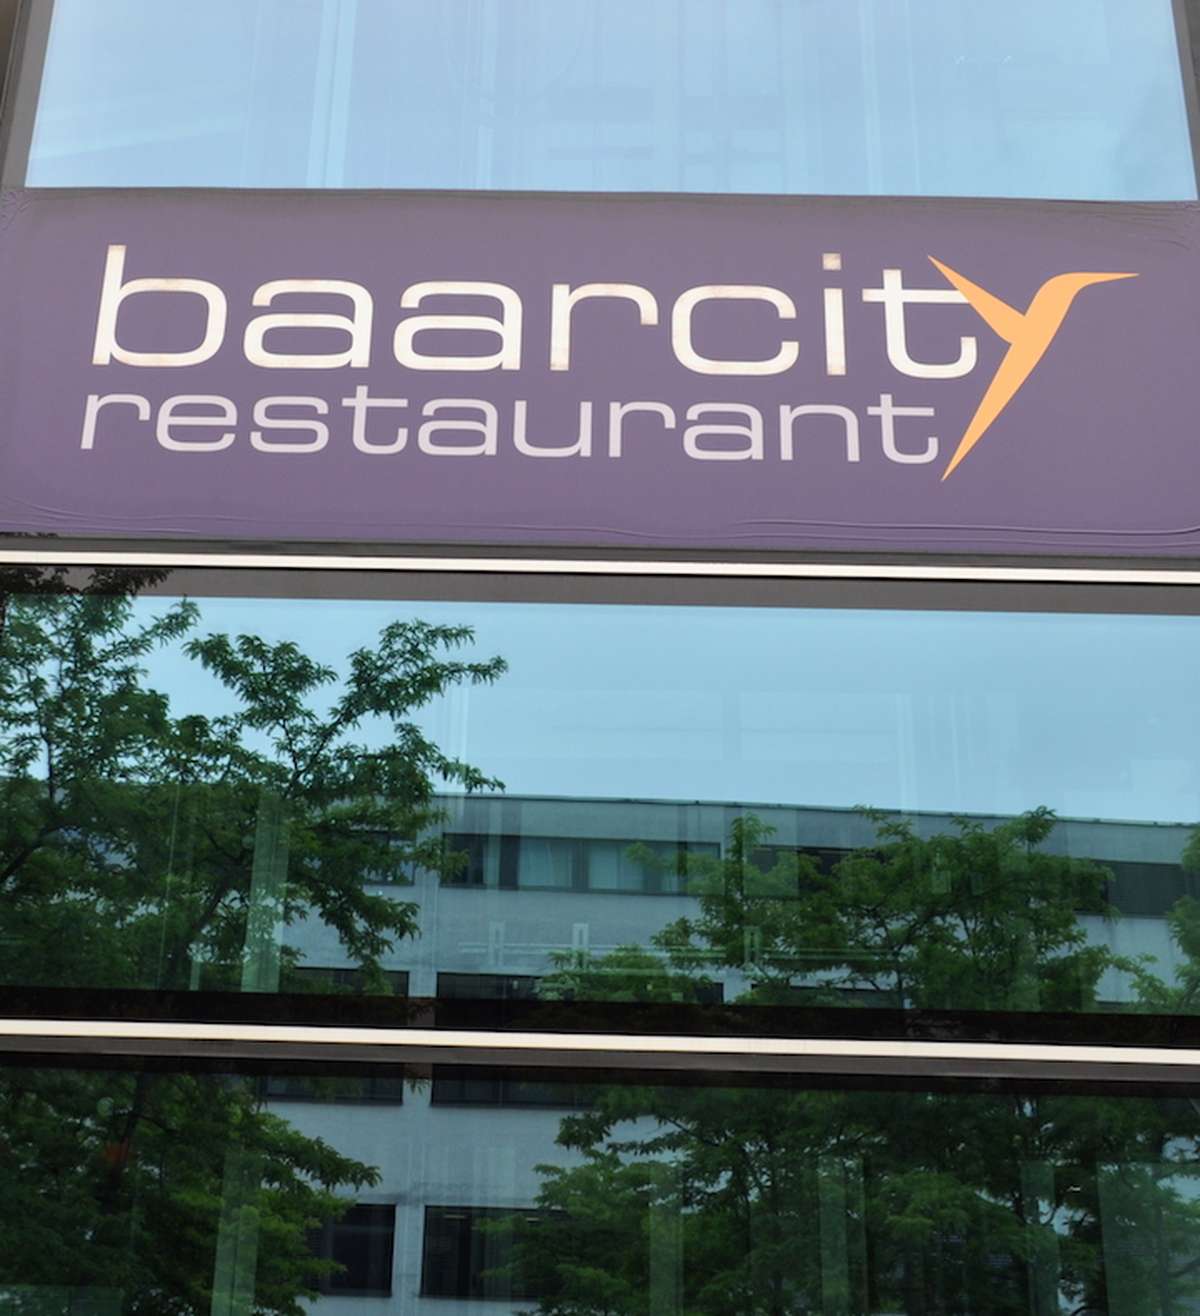 Gemeinde Baar will Restaurant Baar-City mieten